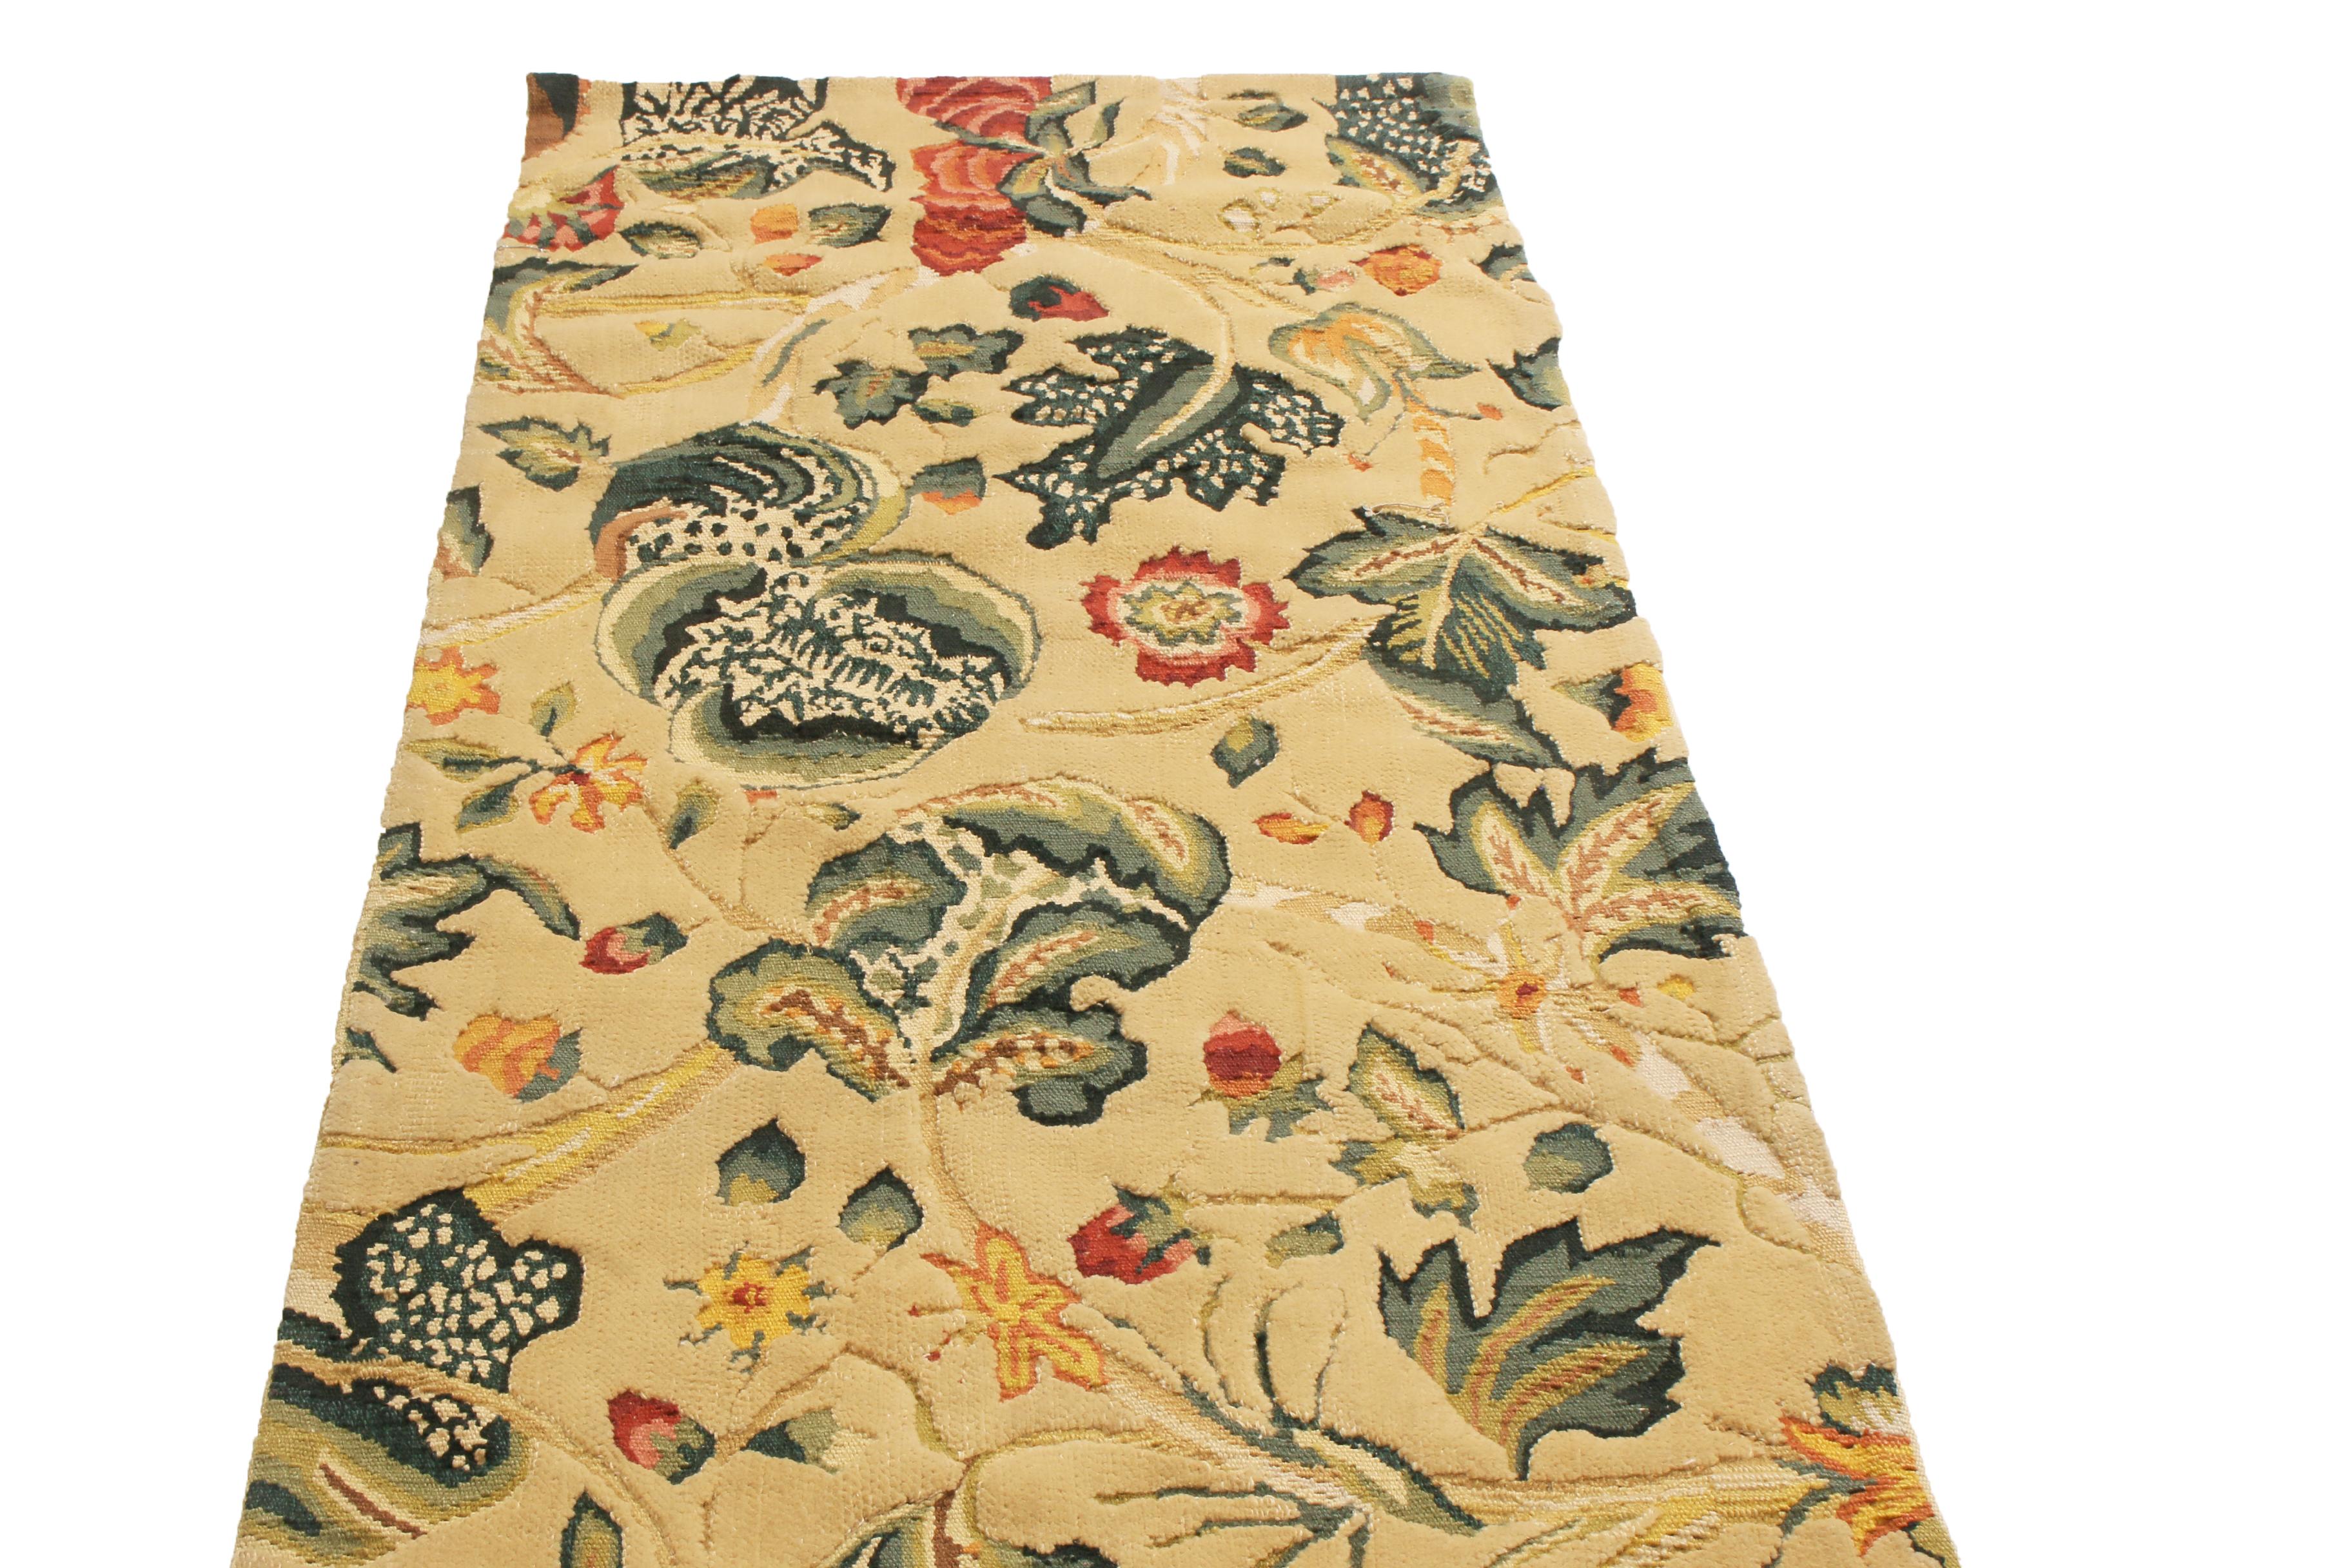 Originaire de Chine, ce chemin de table floral noué à la main s'inspire de motifs floraux Tudor anciens et vintage. Il présente un champ sans bordure, avec des guirlandes florales sinueuses vertes, rouges et jaunes dorées sur un fond crème indulgent